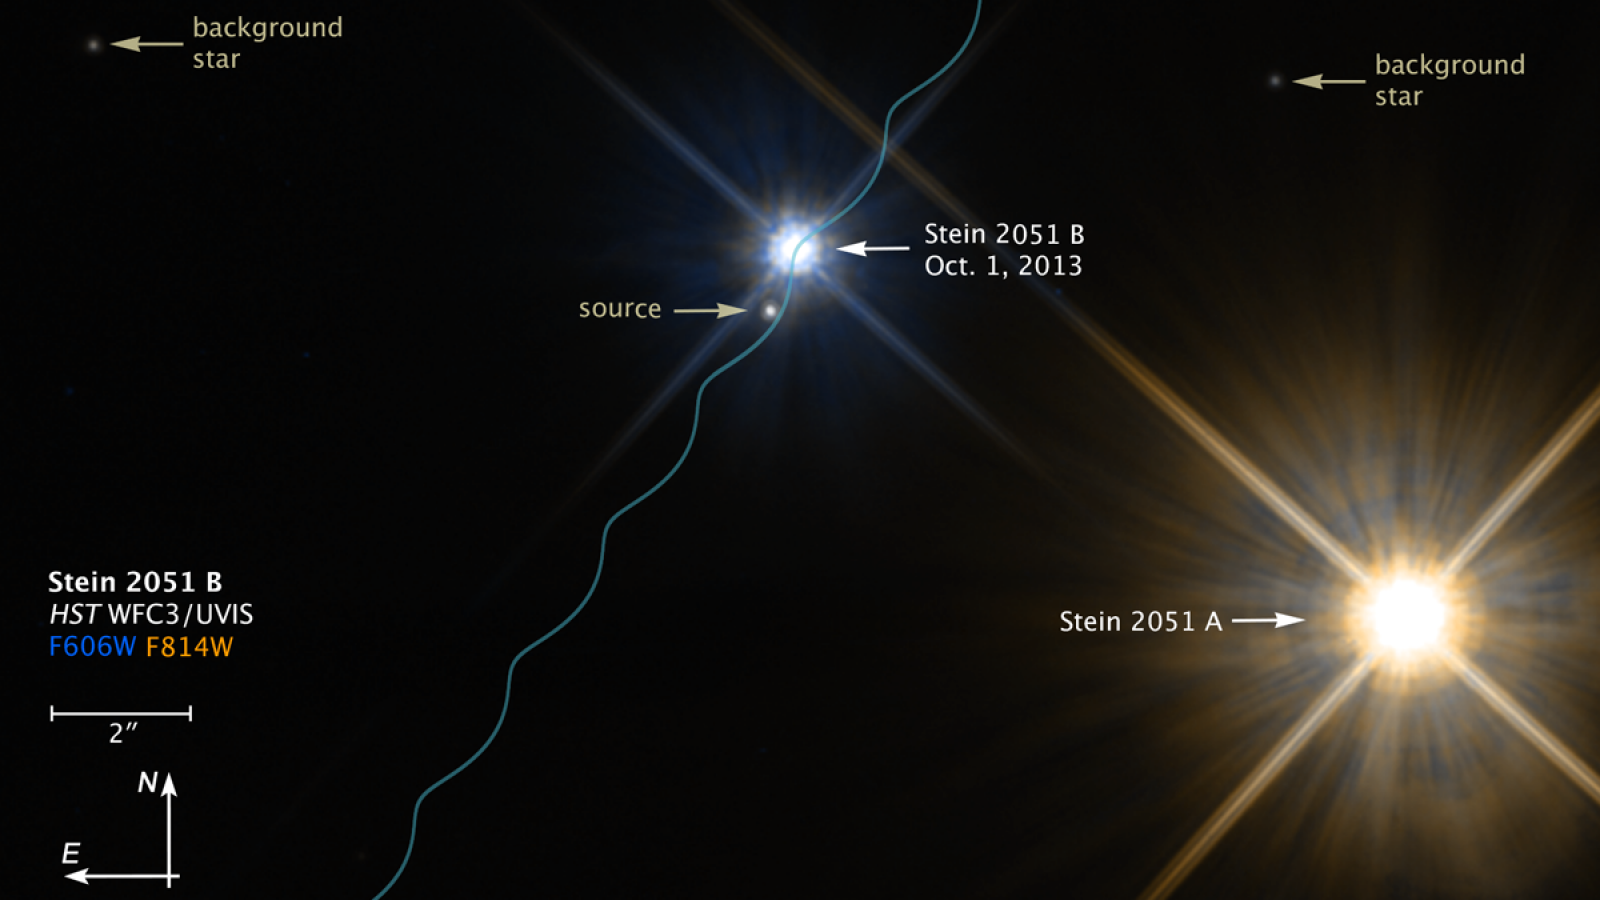 El equipo de astrónomos ha analizado el sistema estelar Stein 2051B, que tiene una enana blanca y está a unos 17 años luz de la Tierra.